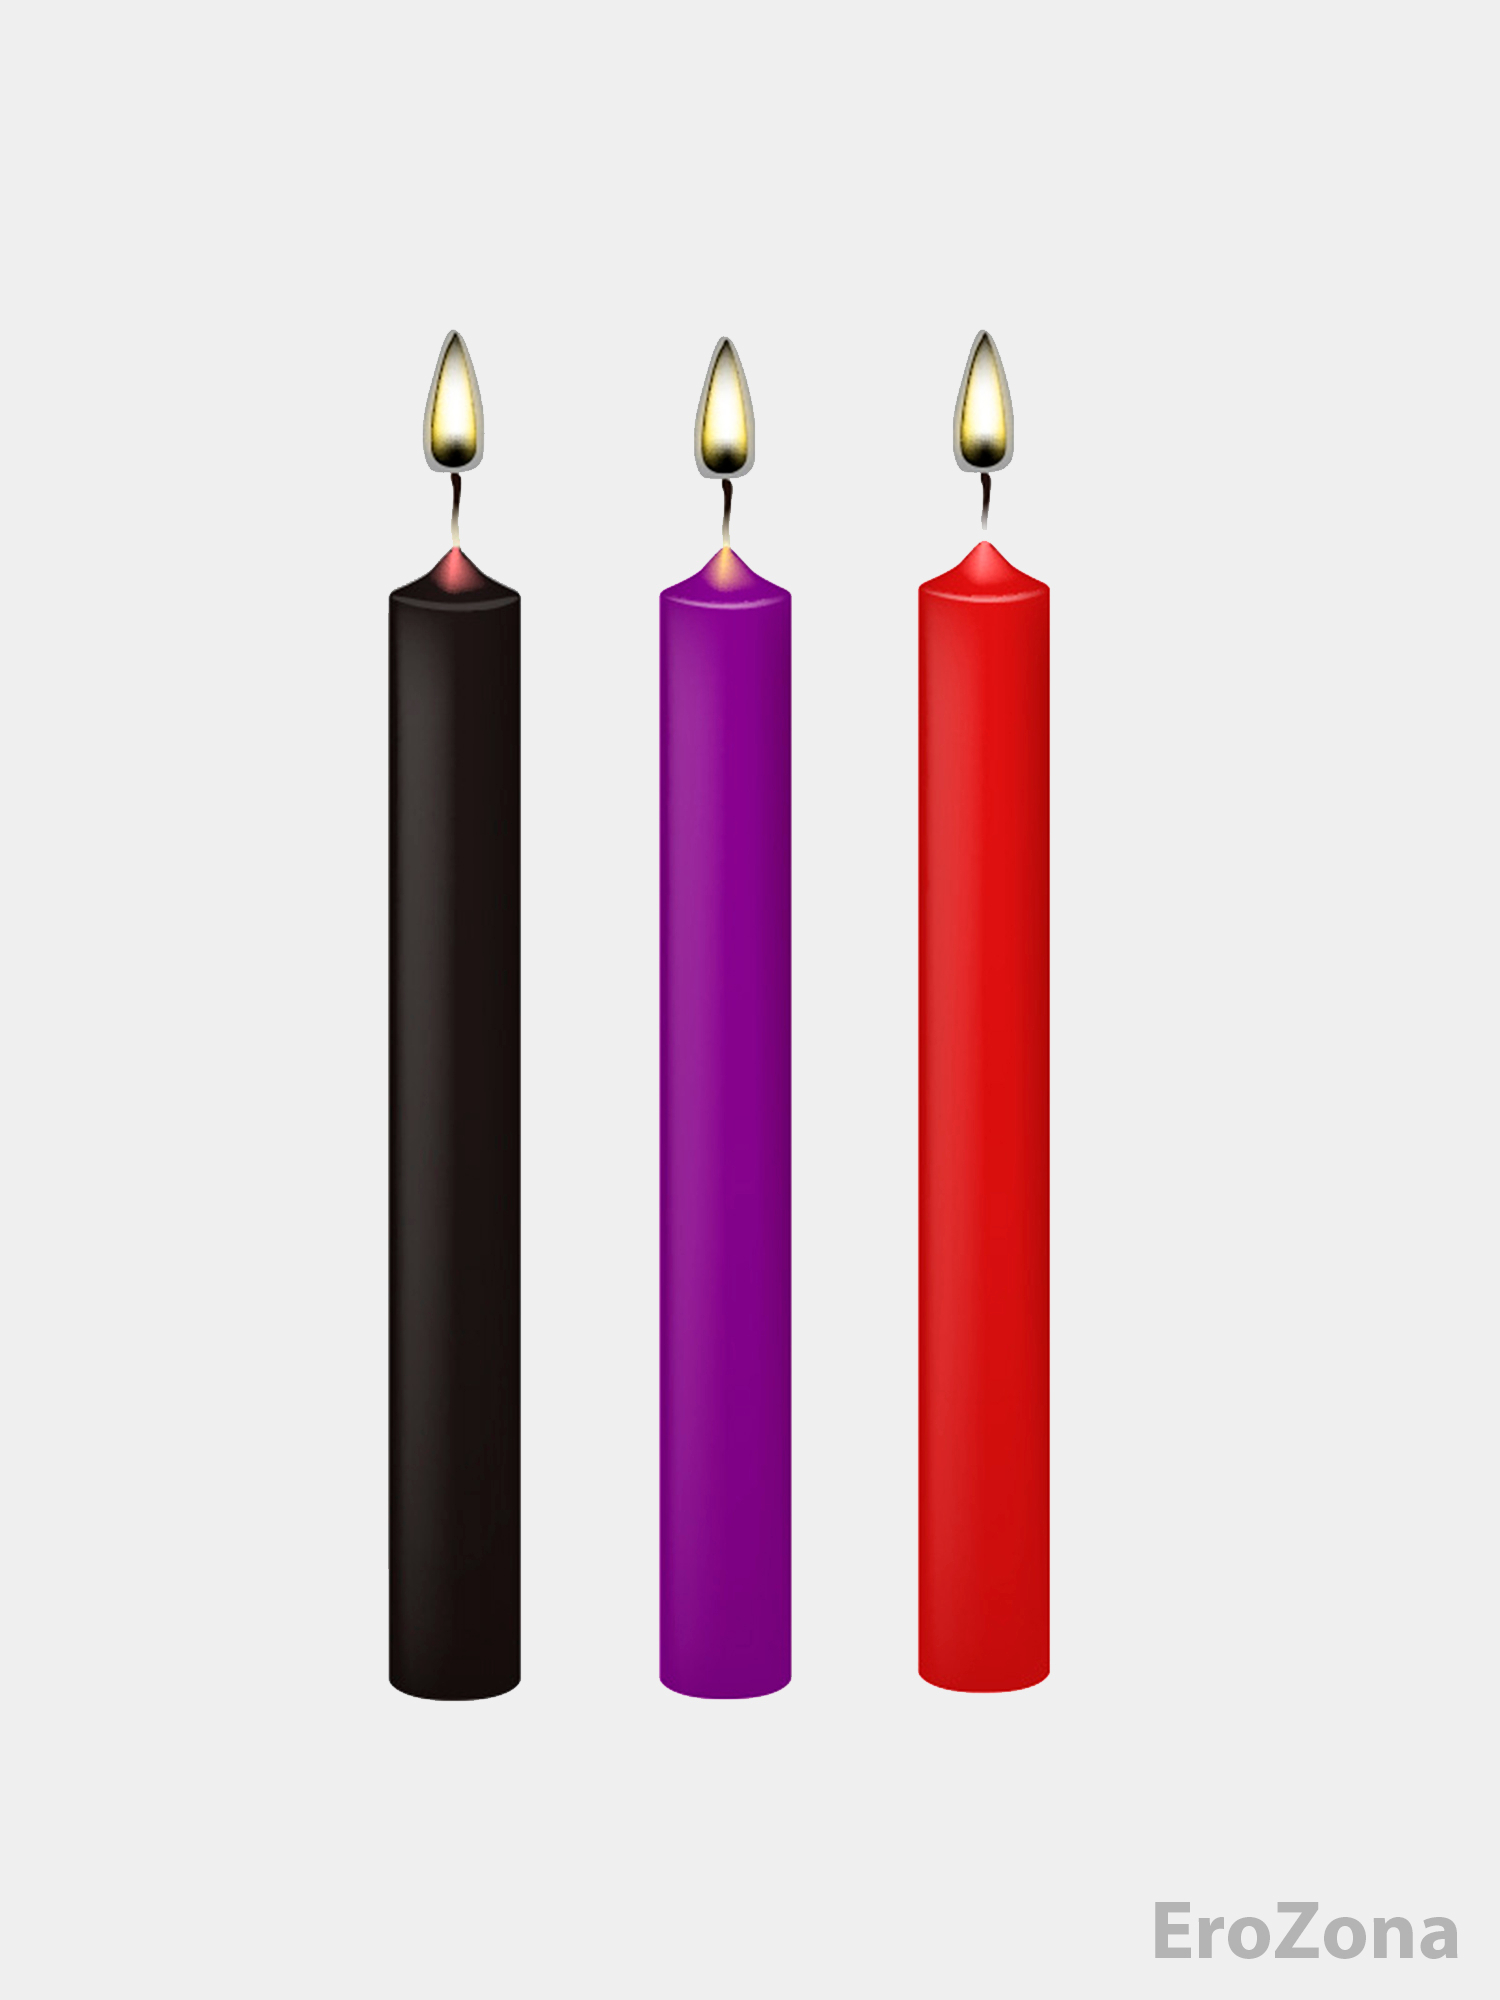 Эротические, БДСМ, низкотемпературные и массажные свечи купить в интернет-магазине Свечмаг